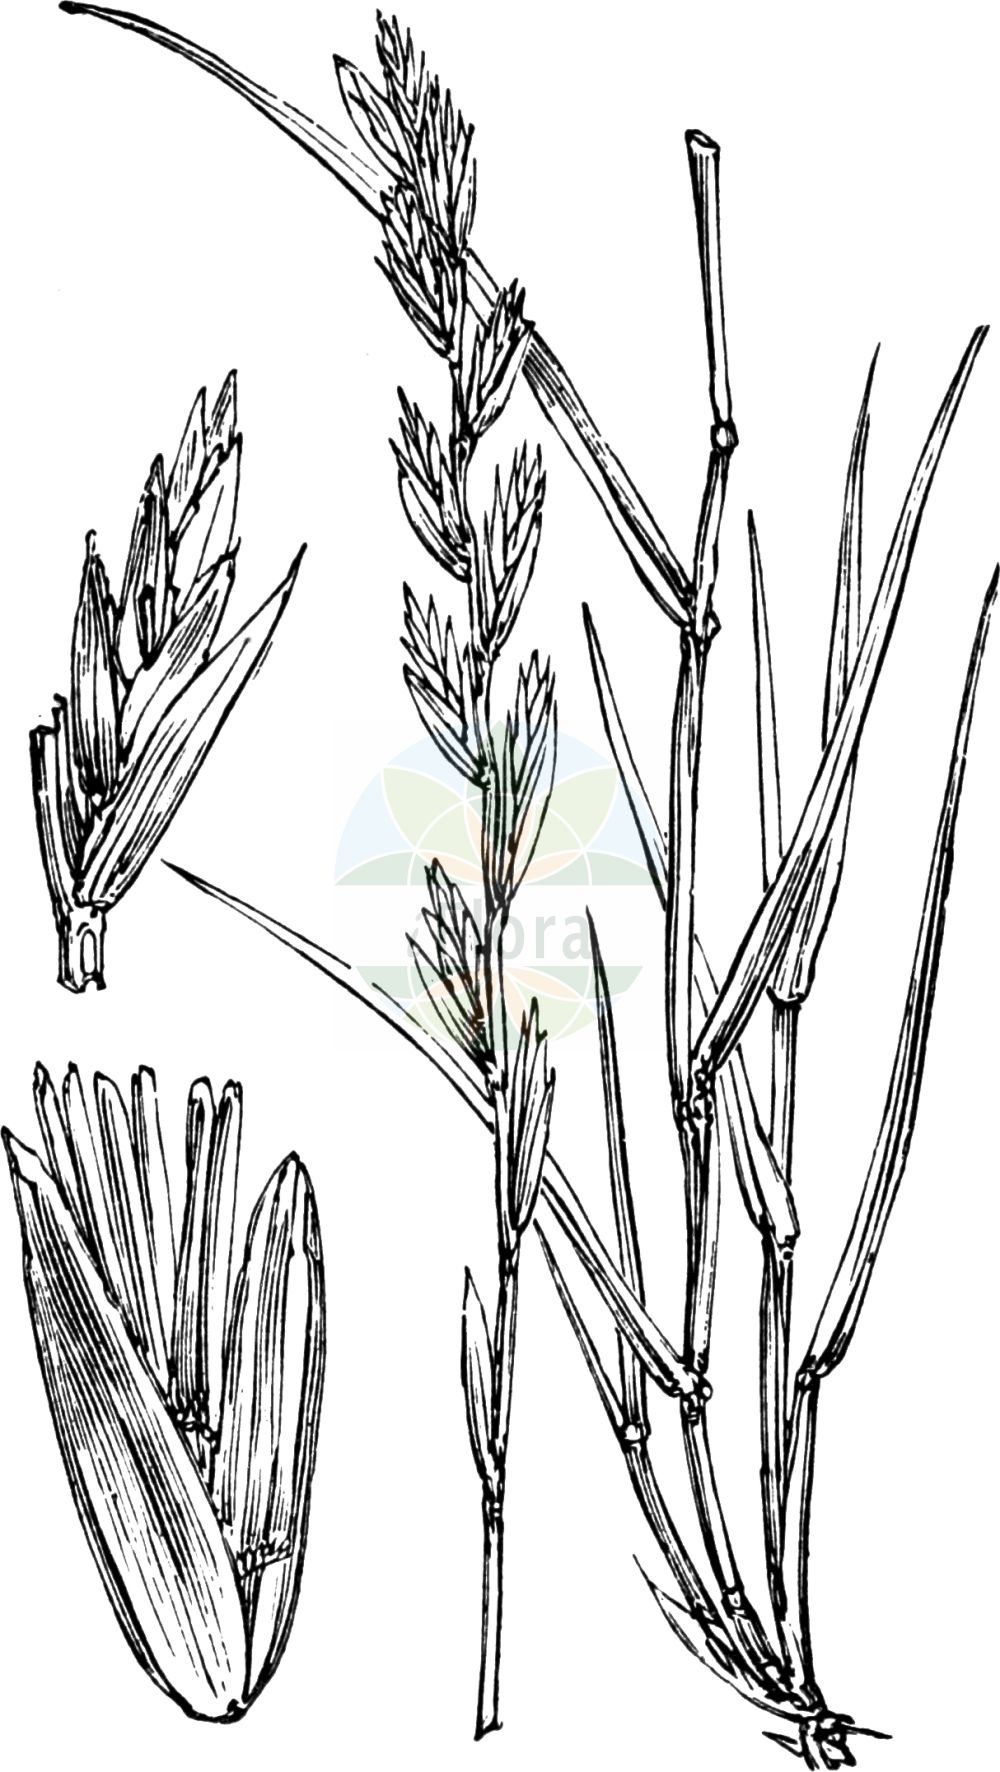 Historische Abbildung von Lolium perenne (Ausdauerndes Weidelgras - Perennial Rye-grass). Das Bild zeigt Blatt, Bluete, Frucht und Same. ---- Historical Drawing of Lolium perenne (Ausdauerndes Weidelgras - Perennial Rye-grass). The image is showing leaf, flower, fruit and seed.(Lolium perenne,Ausdauerndes Weidelgras,Perennial Rye-grass,Festuca perennis,Lolium cristatum,Lolium marschalii,Lolium perenne,Ausdauerndes Weidelgras,Ausdauernder Lolch,Dauer-Lolch,Deutsches Weidelgras,Perennial Rye-grass,English Ryegrass,Persian Ryegrass,Lolium,Weidelgras,Ryegrass,Poaceae,Süßgräser,Grass family,Blatt,Bluete,Frucht,Same,leaf,flower,fruit,seed,Fitch et al. (1880))